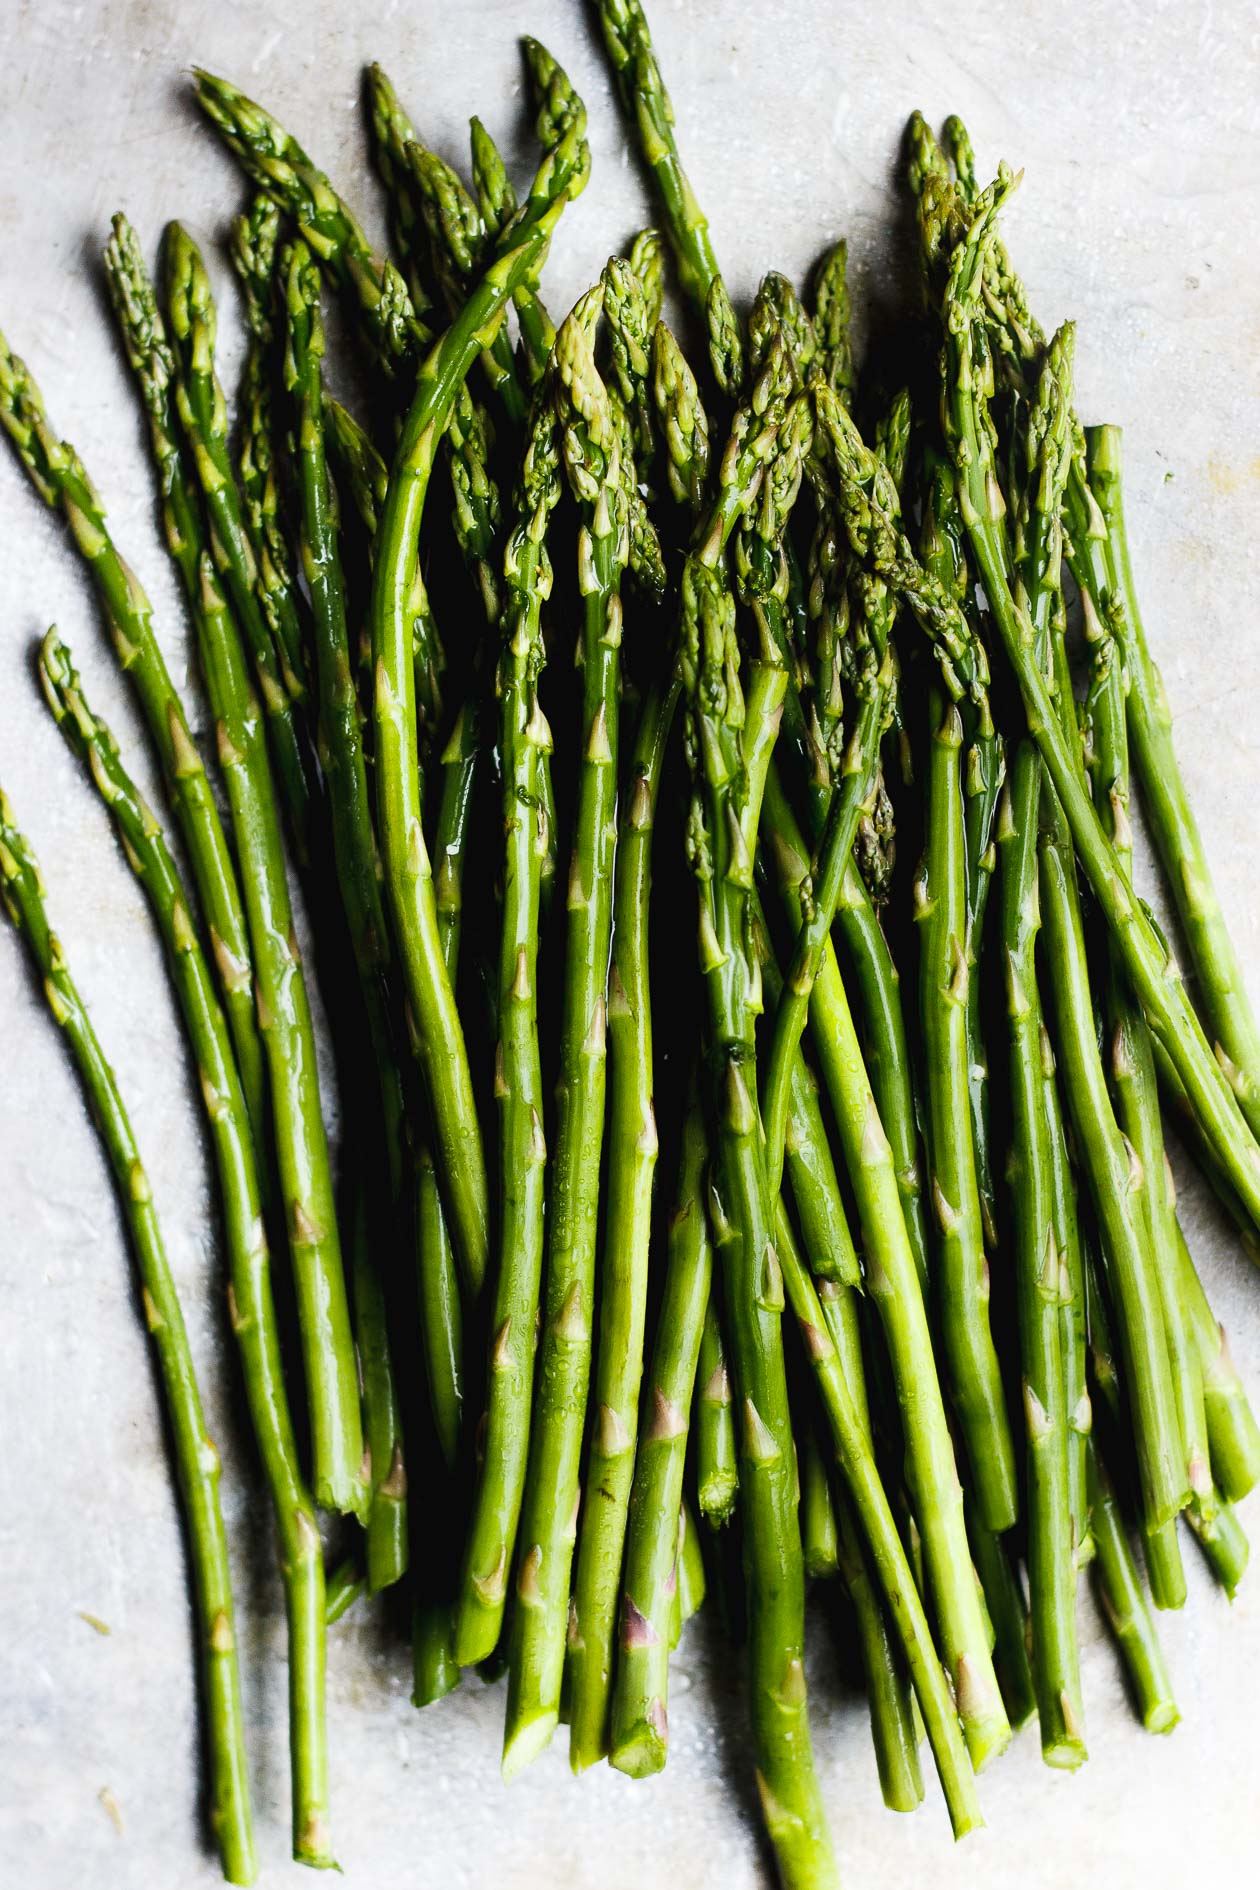 raw green asparagus